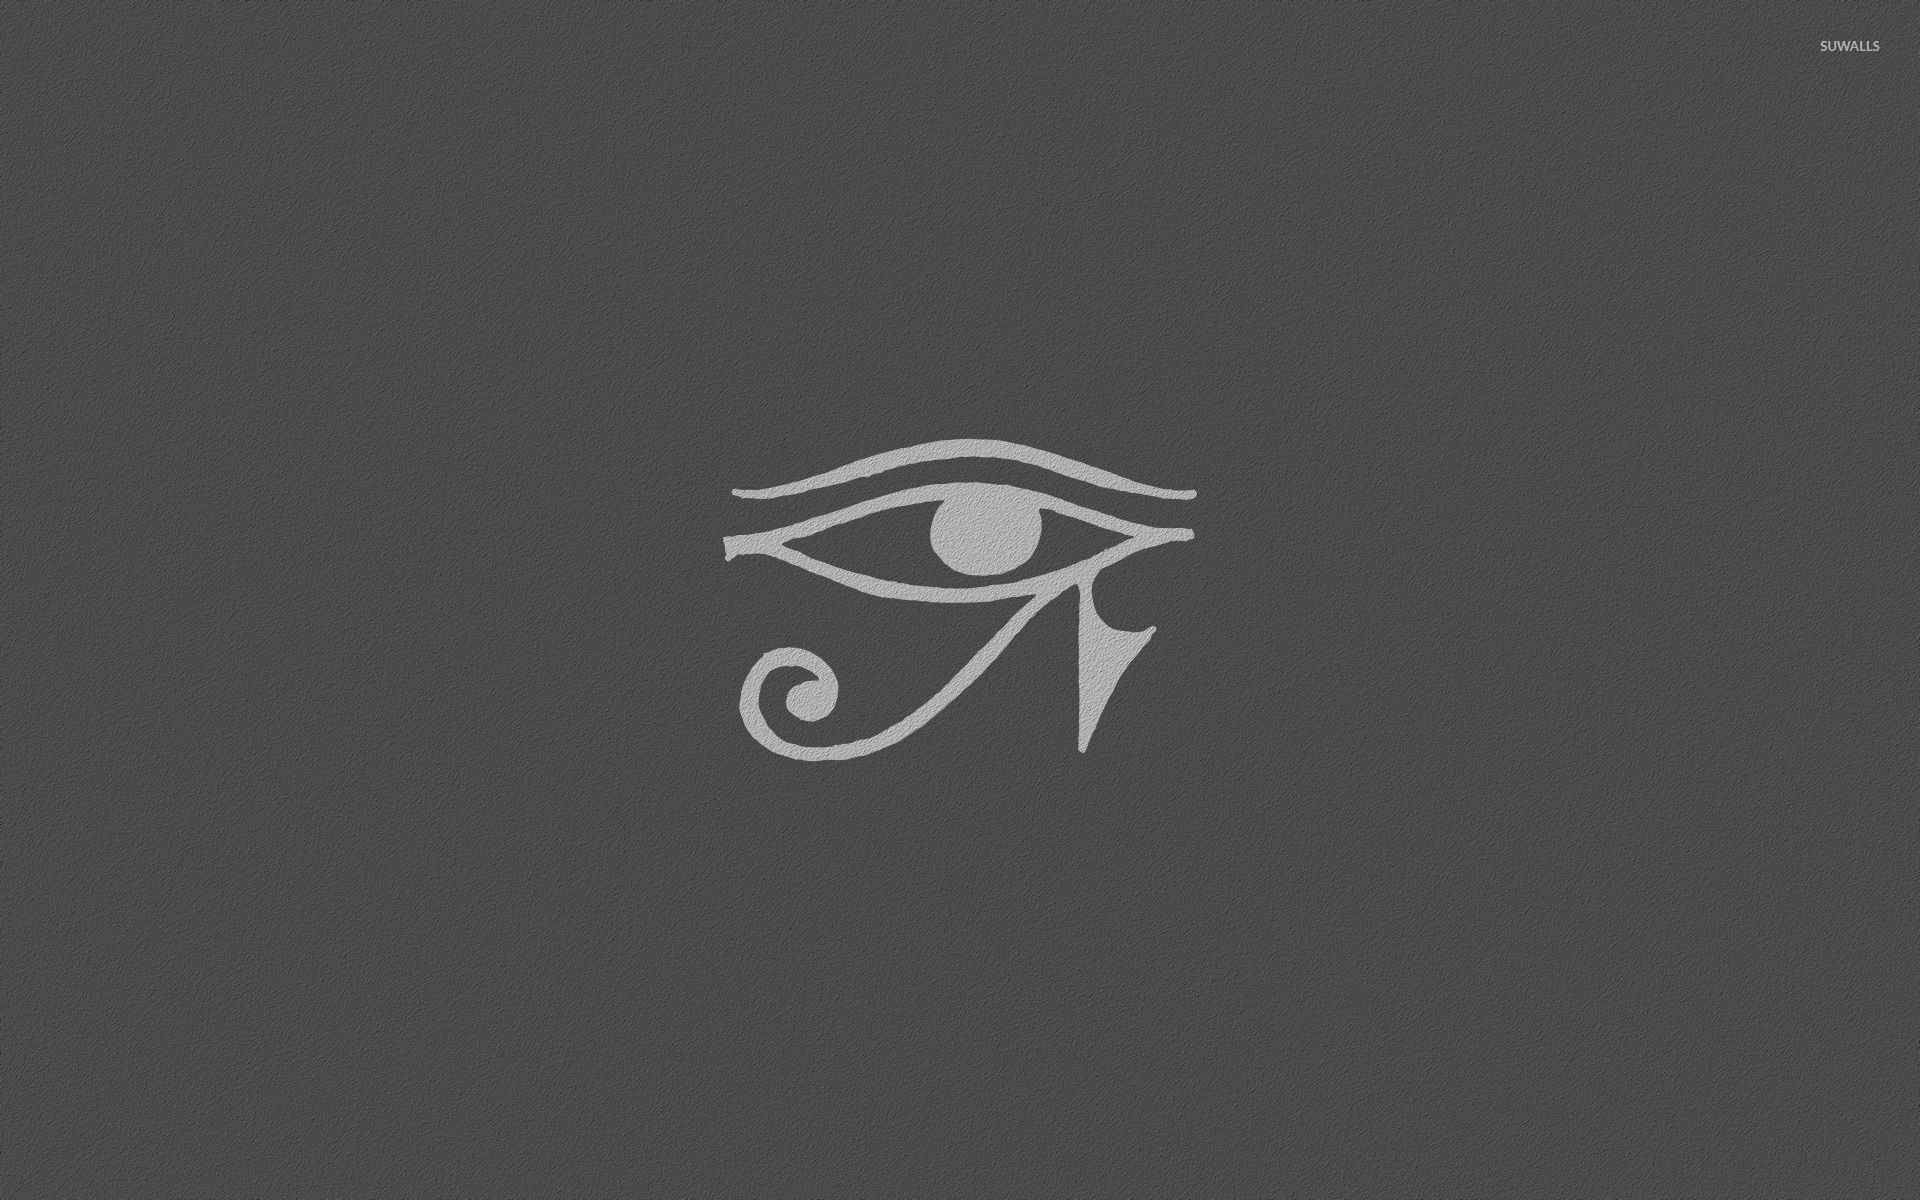 eye of horus wallpaper,logo,font,graphics,illustration,brand